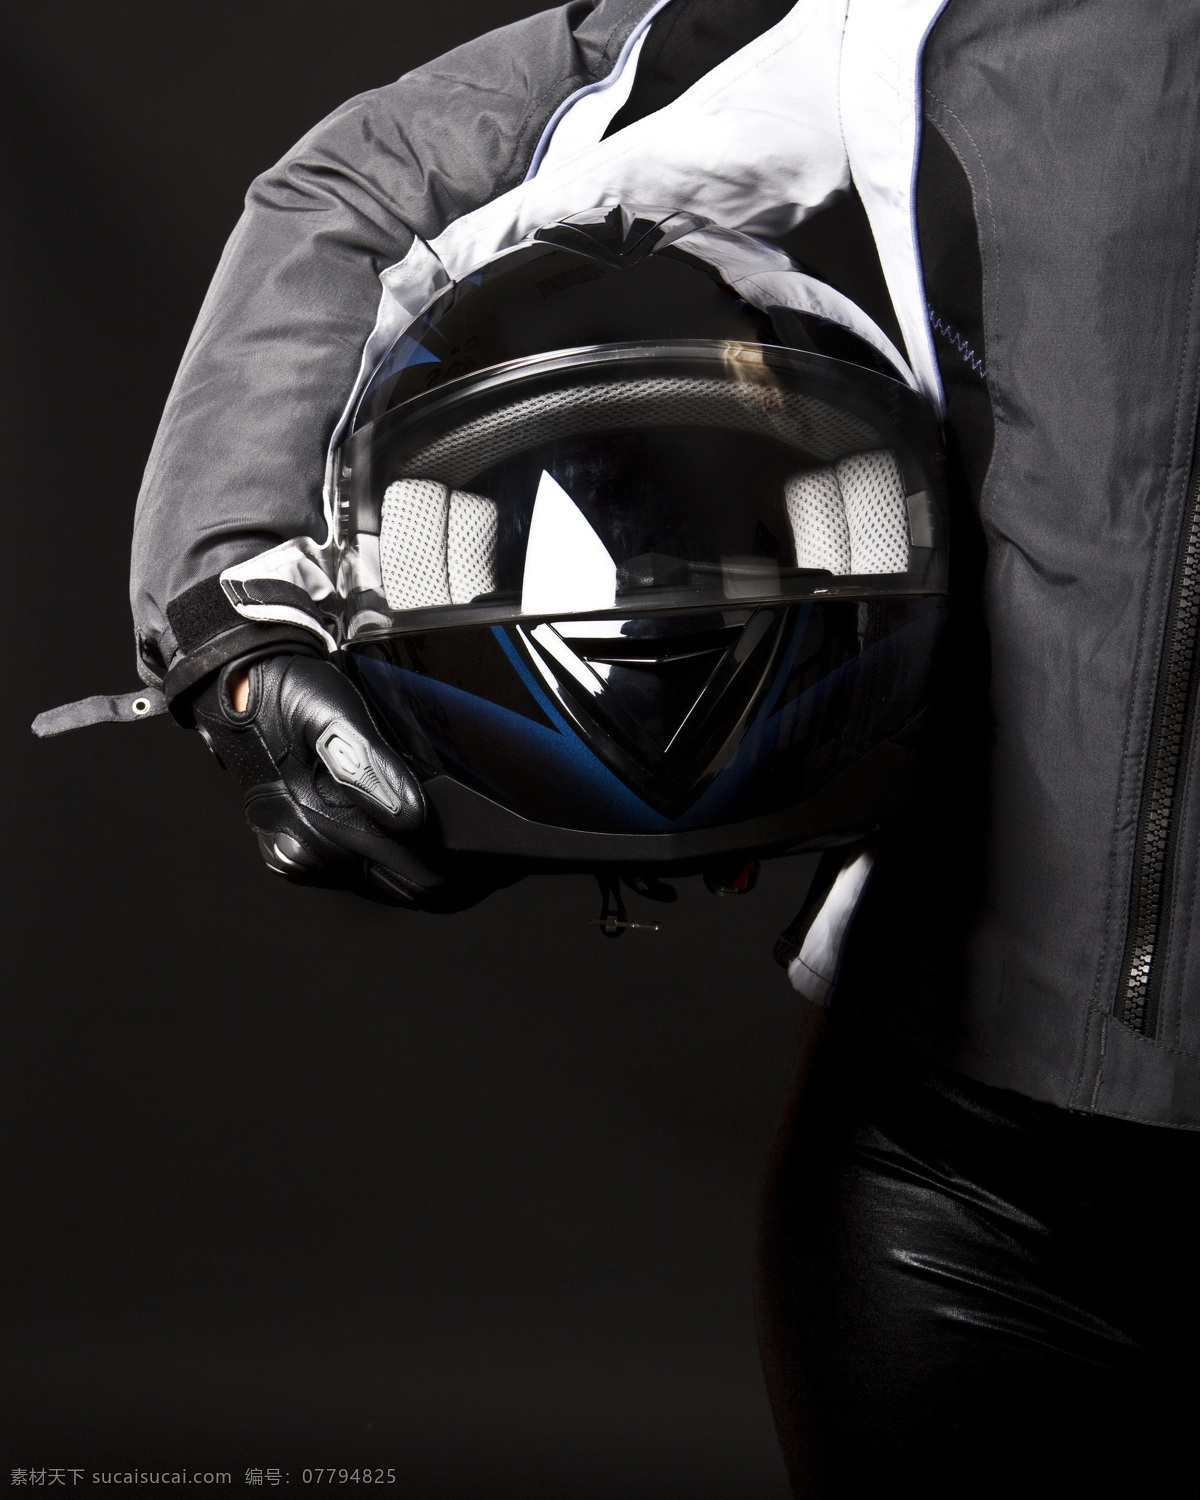 摩托 车手 赛车手 摩托车手 头盔 生活人物 人物图片